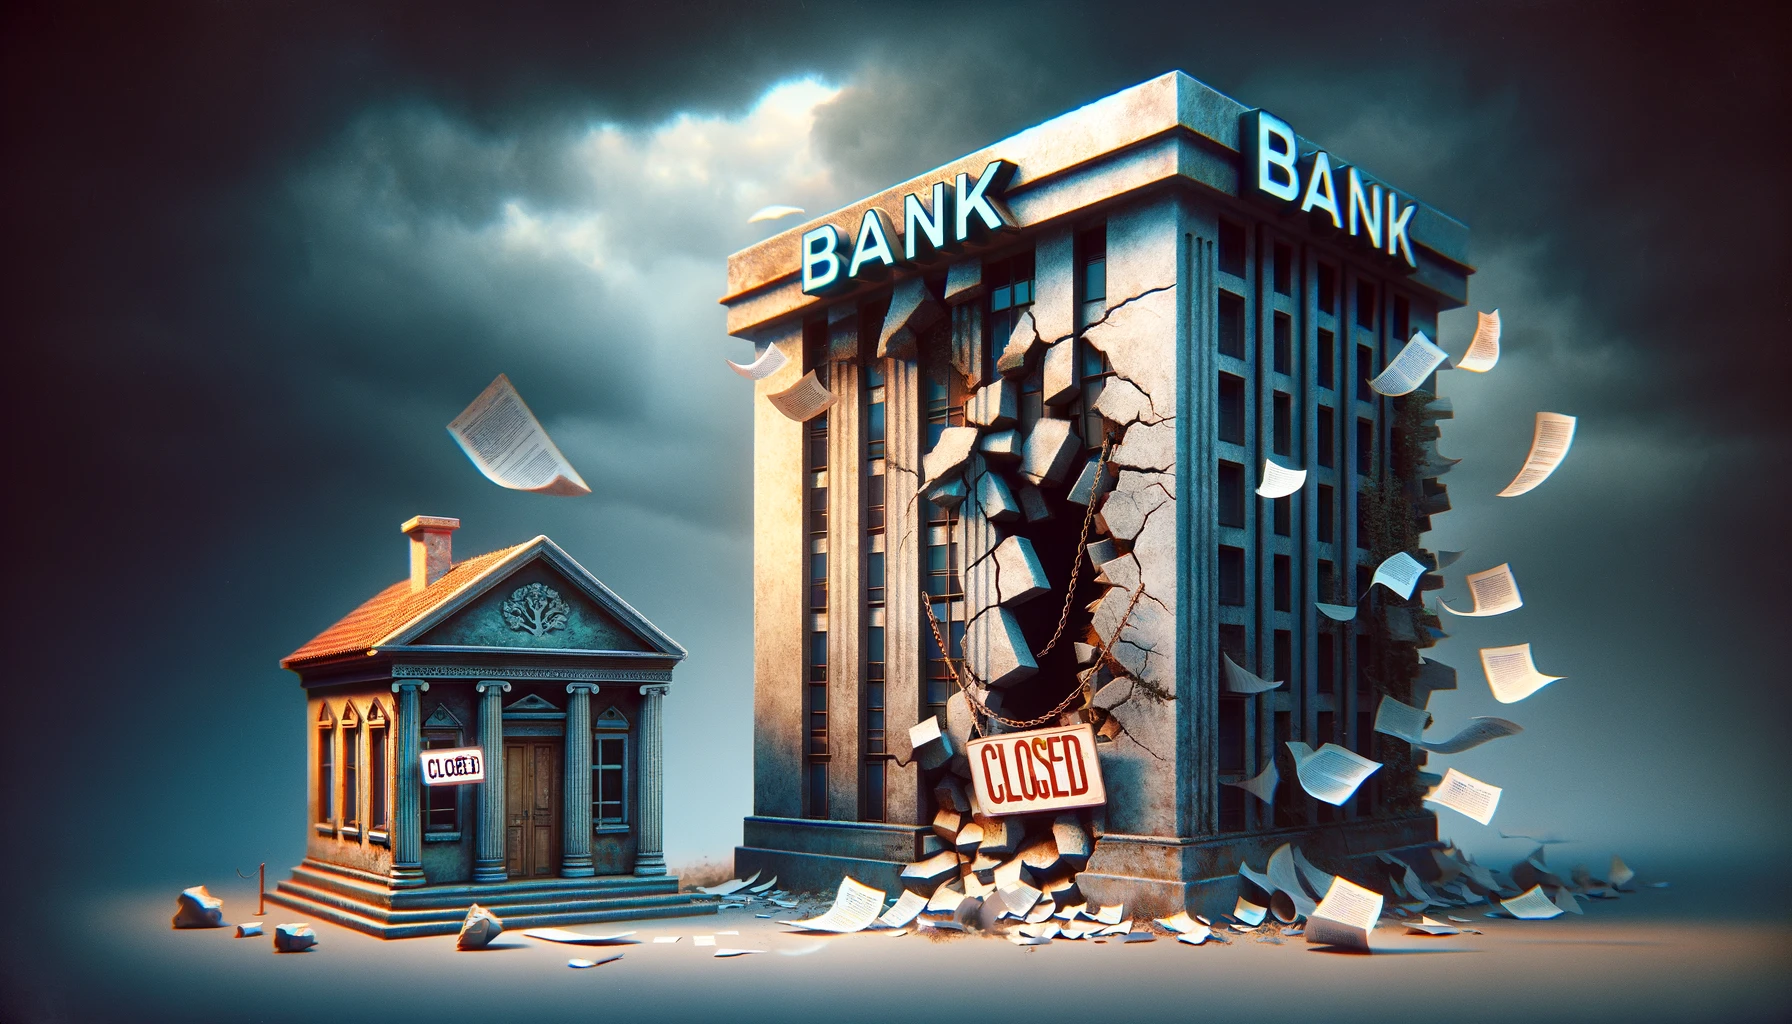 obrazek przedstawia wizualizację instytucji finansowych, które znalazły się w trudnej sytuacji